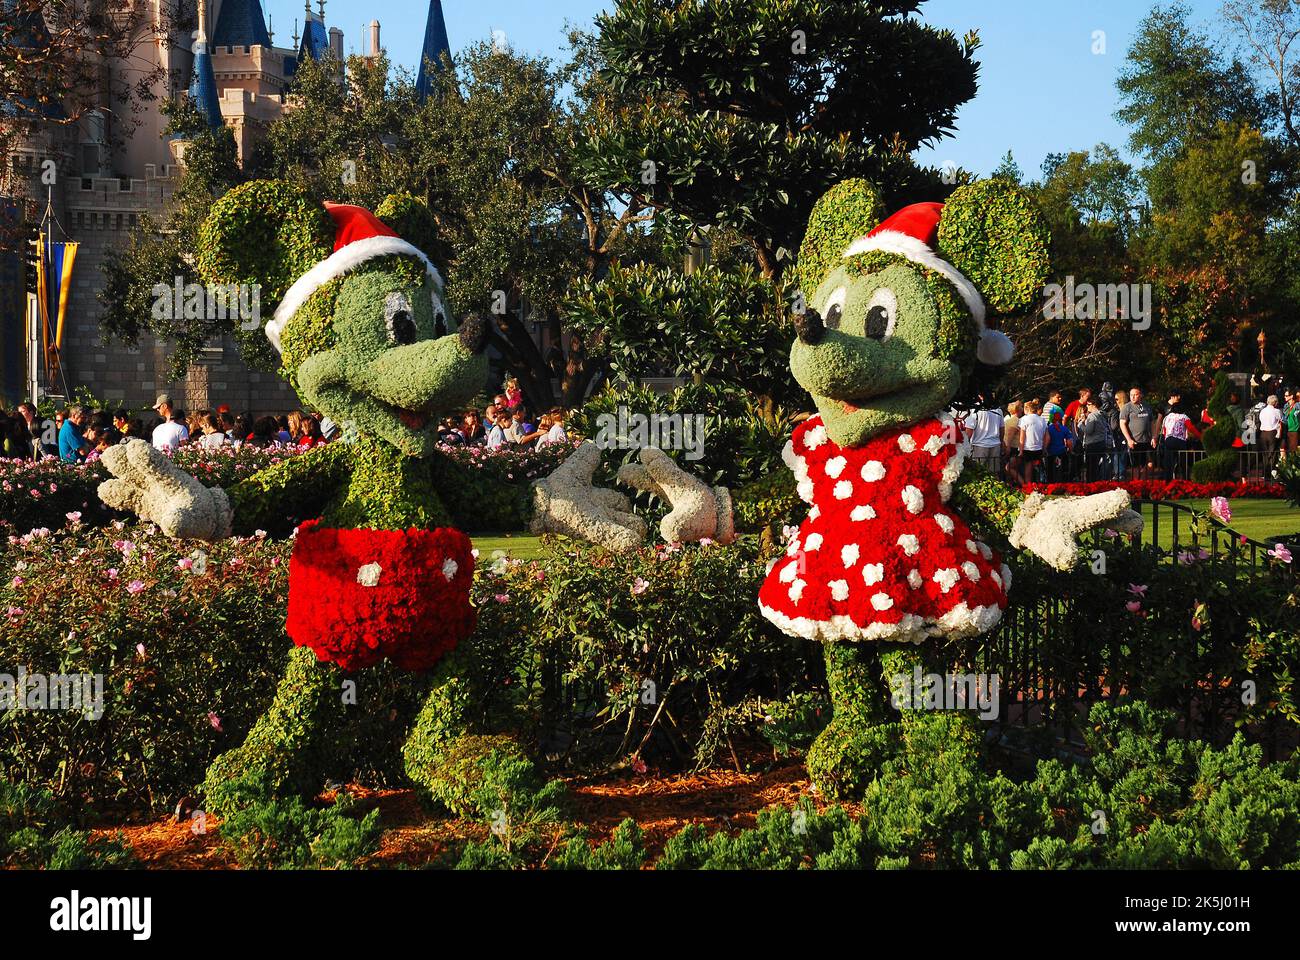 Cespugli e arbusti sono tagliati e disegnati come Topolino e Minnie mouse, vestiti nella festa di Natale al Walt Disney World Foto Stock